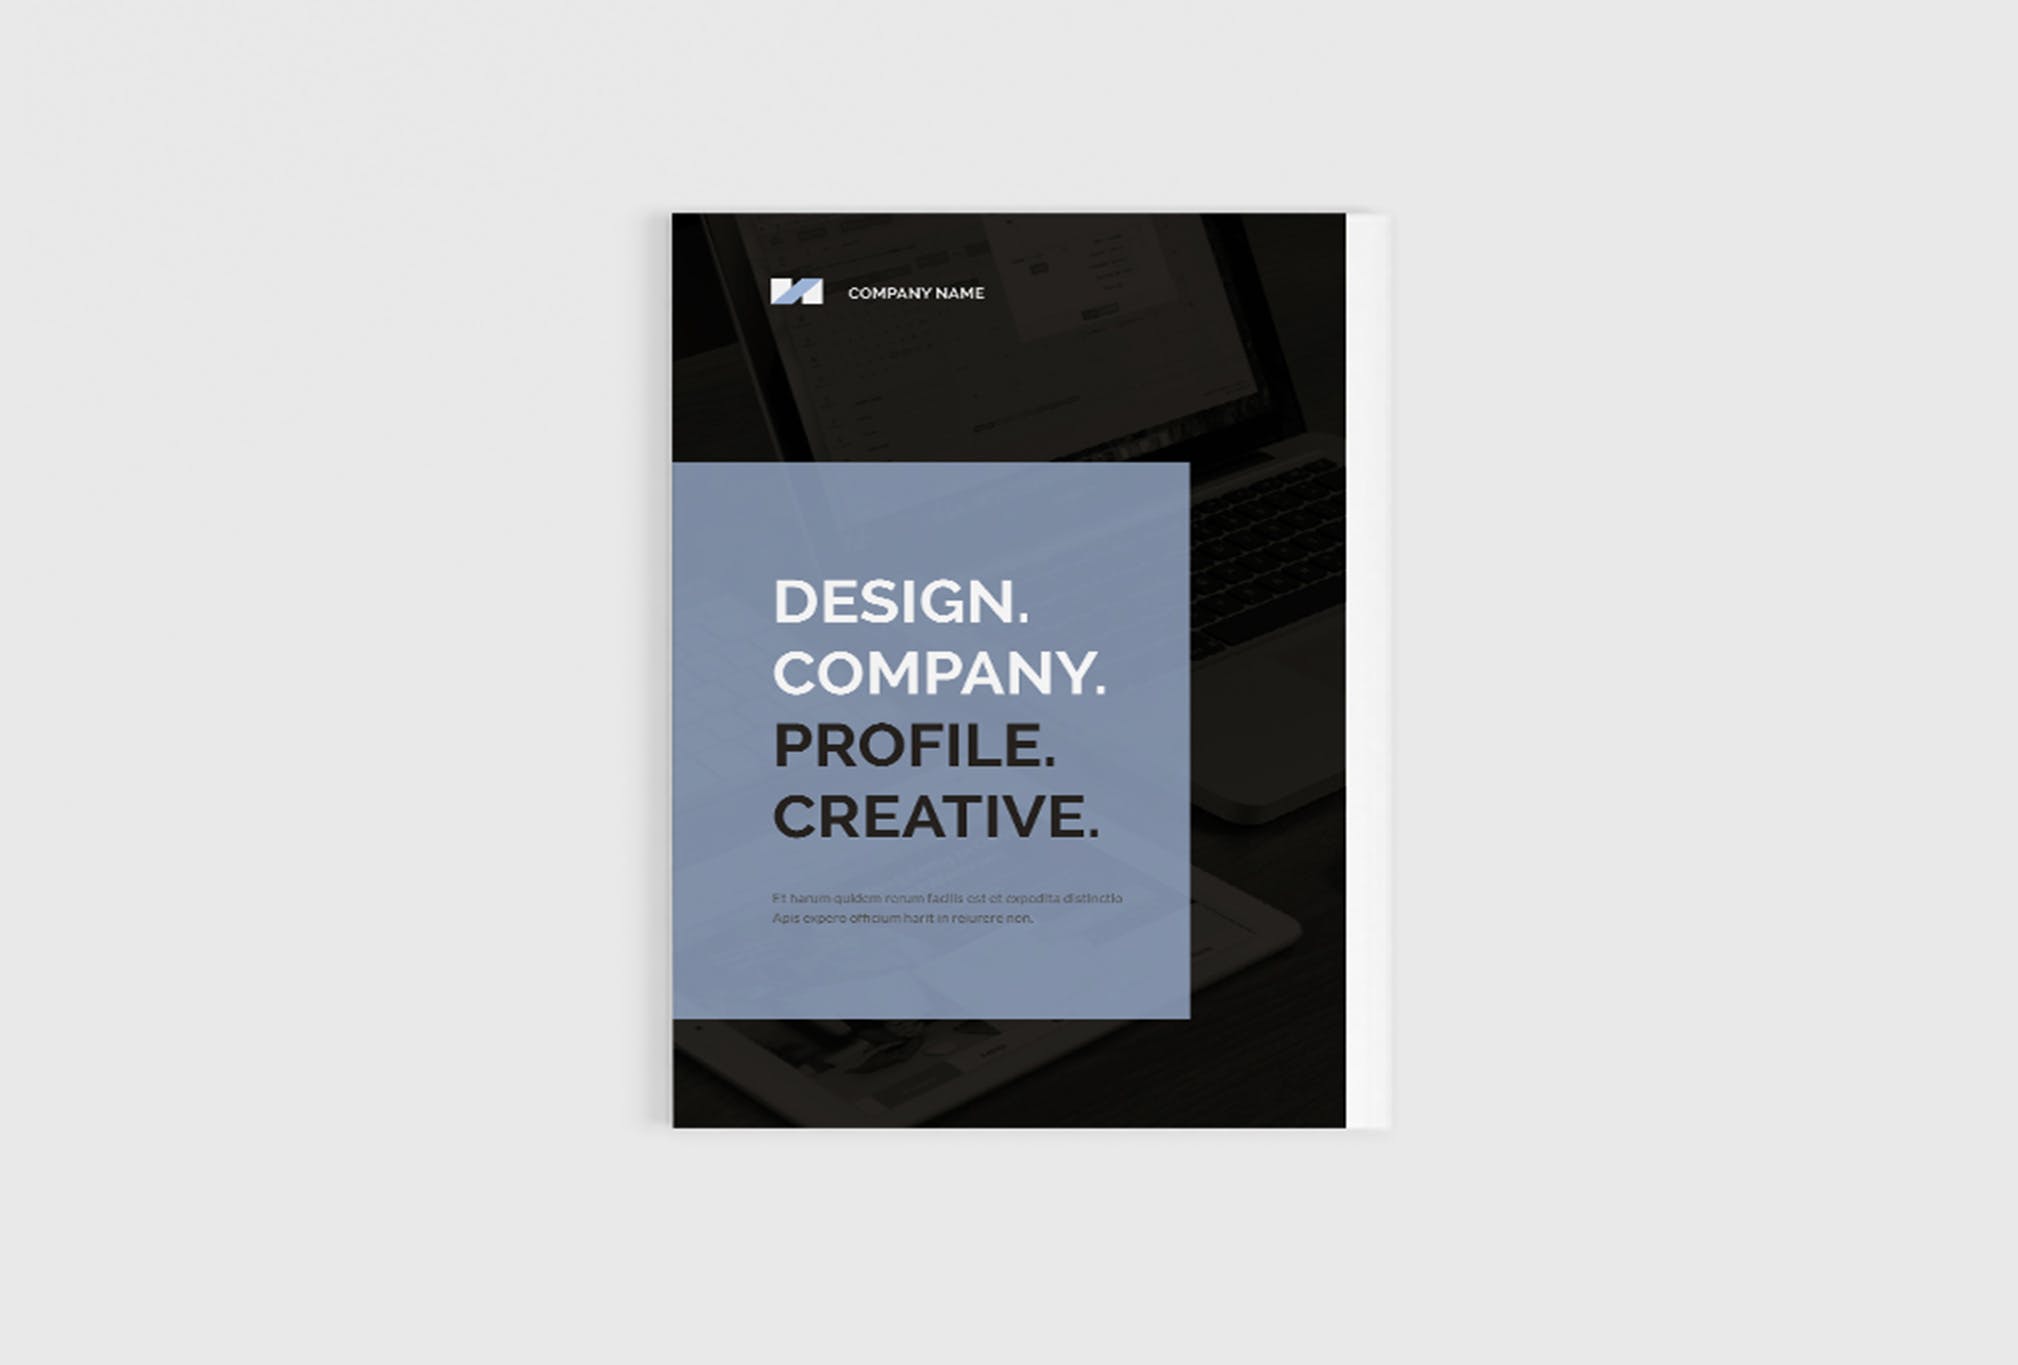 创意设计公司画册设计模板 Design Company Profile插图1